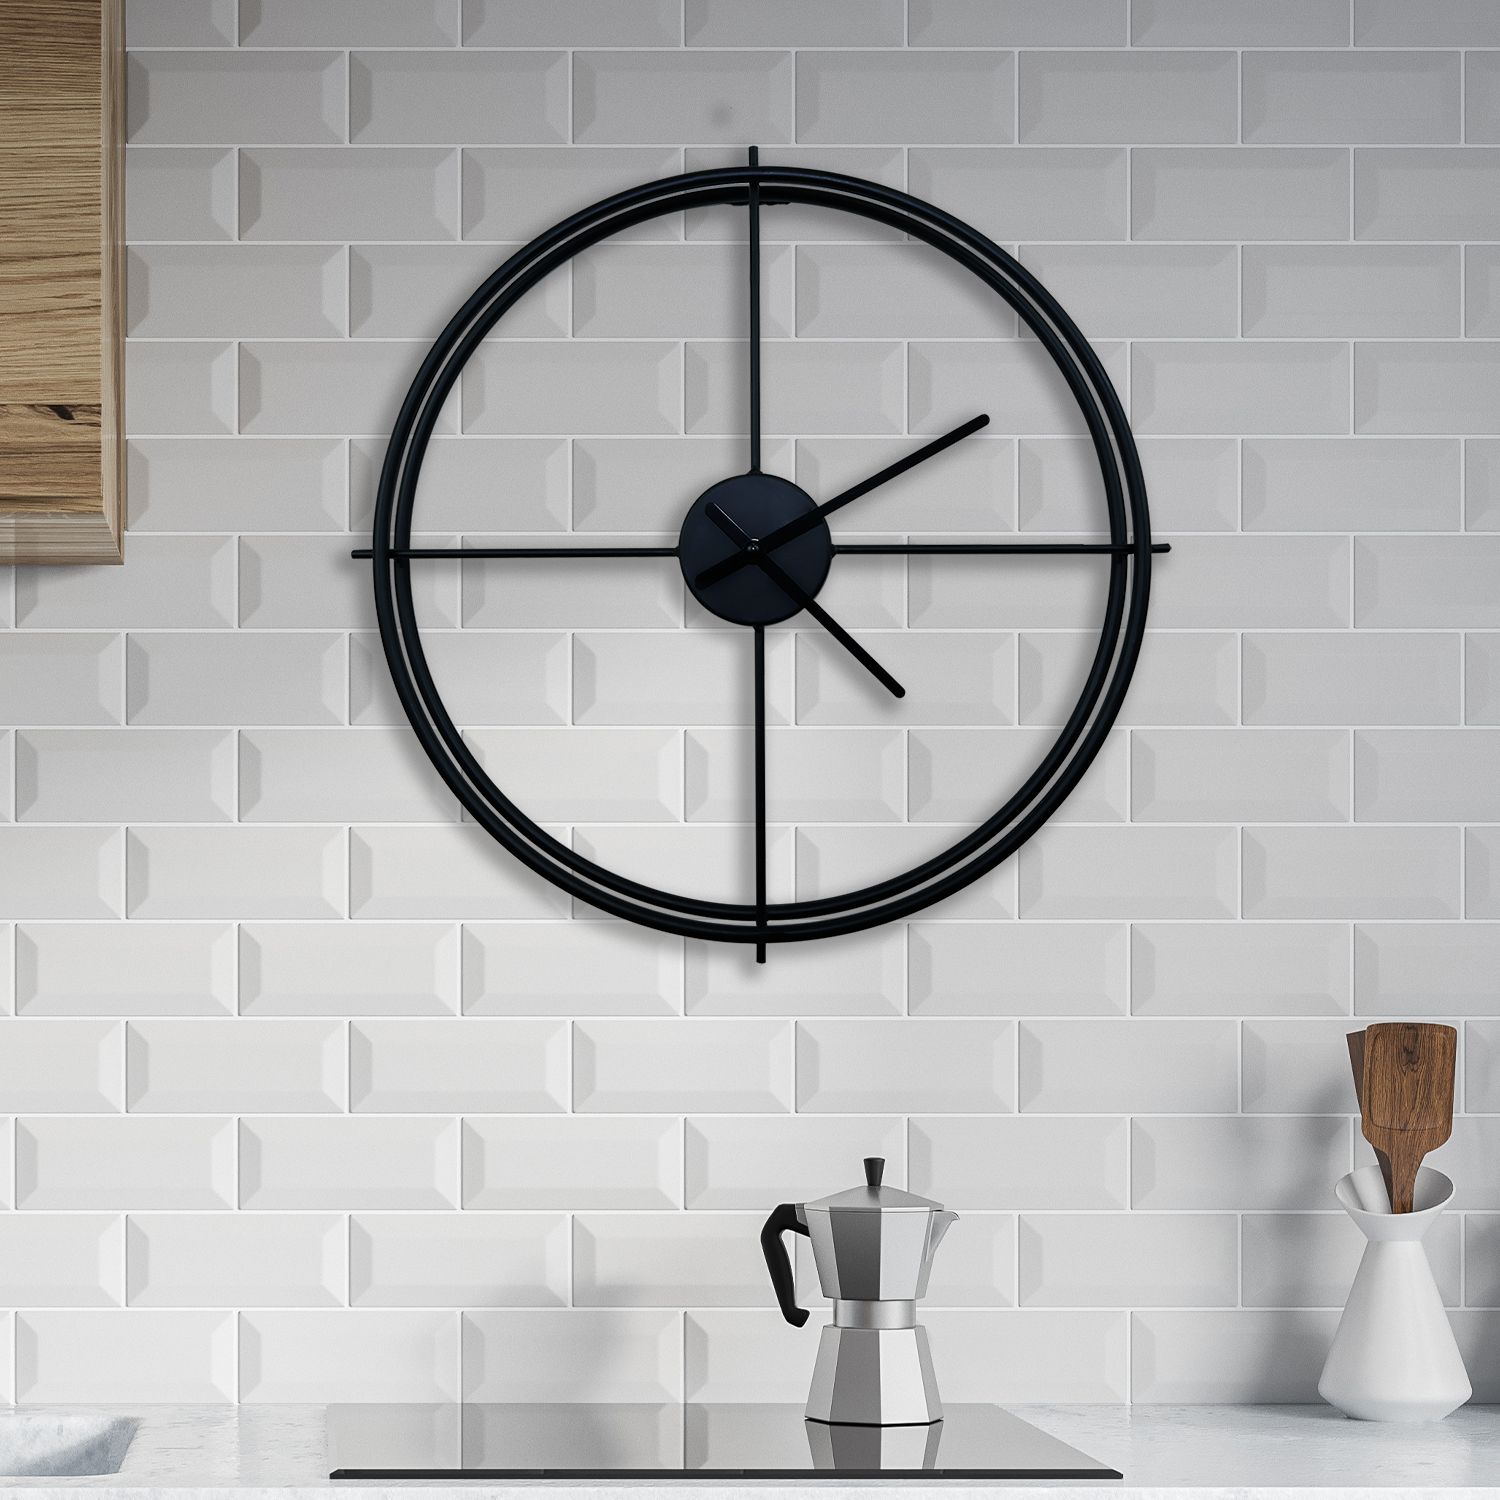 WC2138 - Larry's Minimalist 50cm Iron Wall Clock (Black)